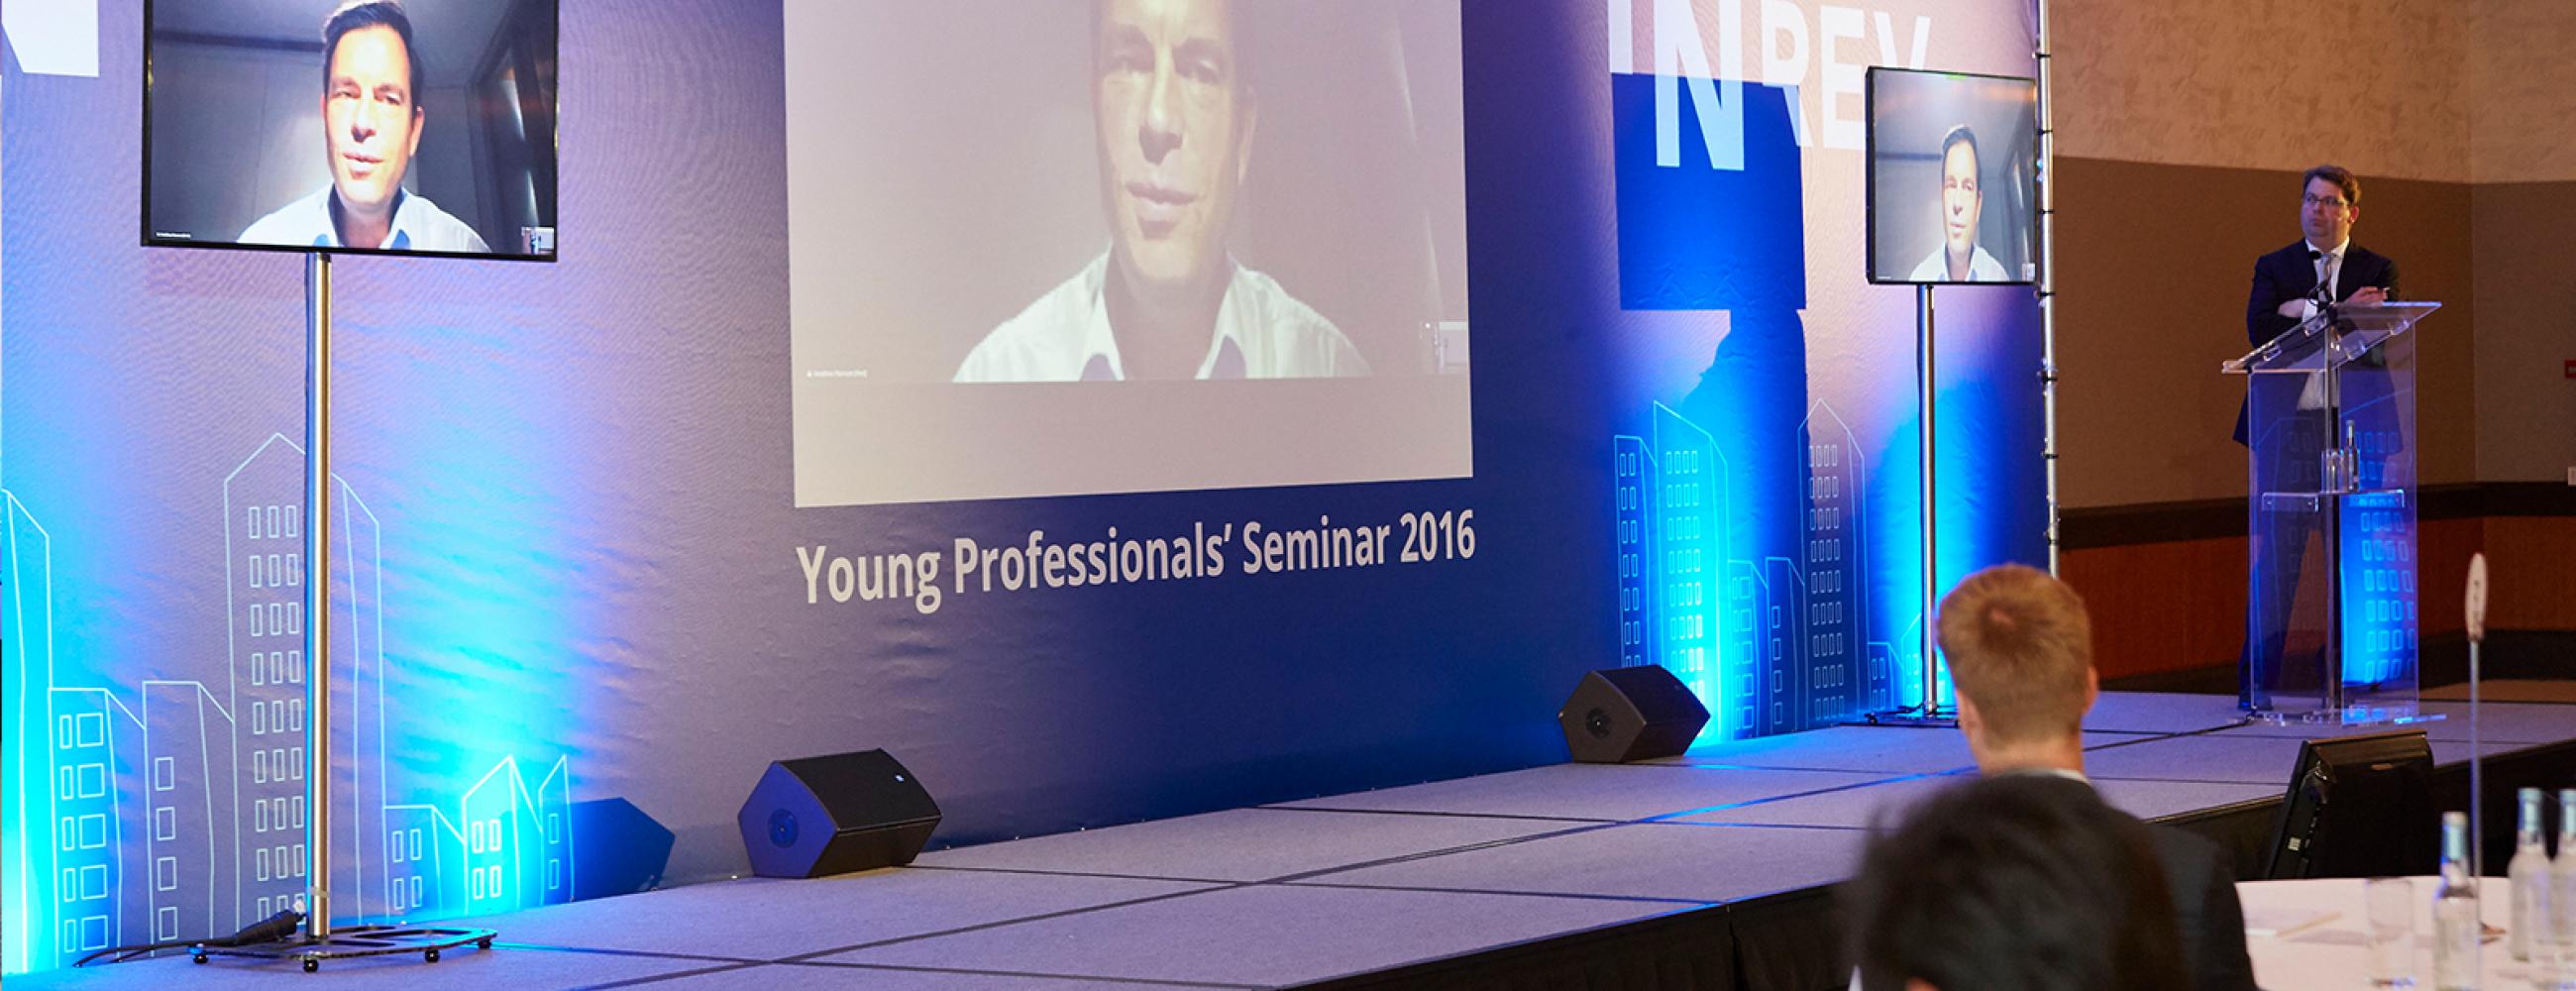 Jonathan Hannam Young Professionals Seminar 2016